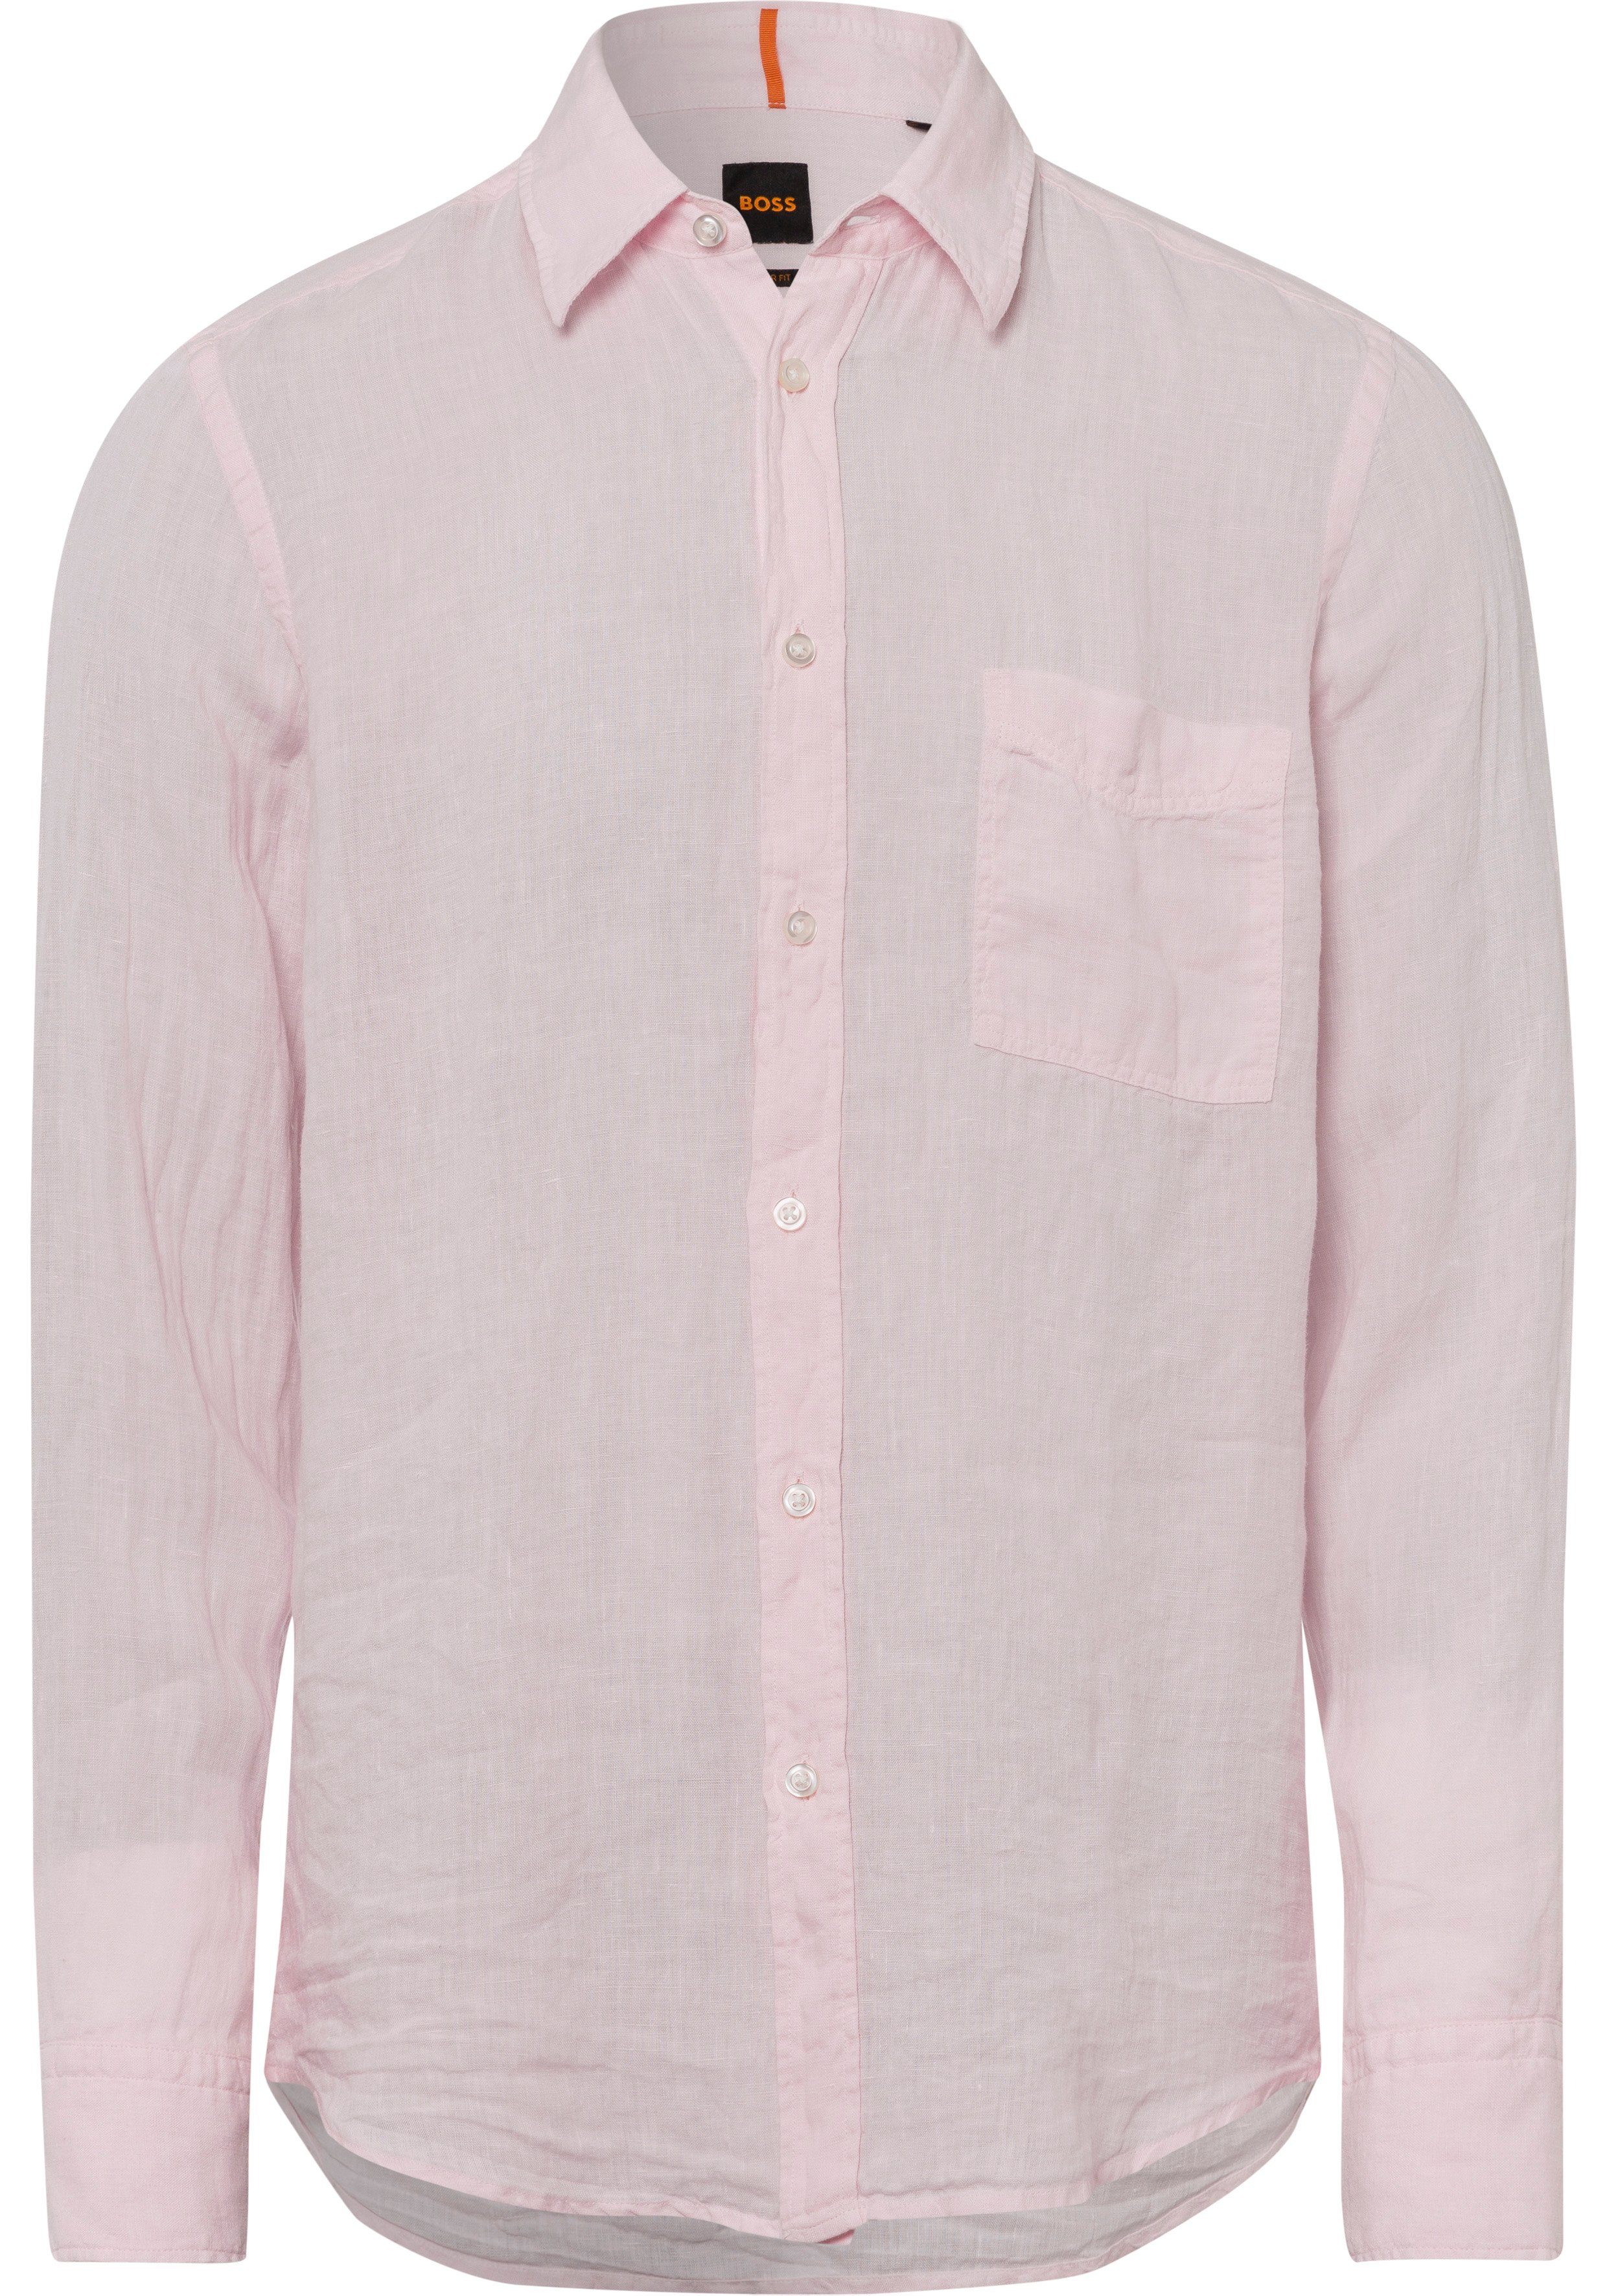 Pink ORANGE BOSS Light/Pastel Langarmshirt mit 682 BOSS-Kontrastdetails